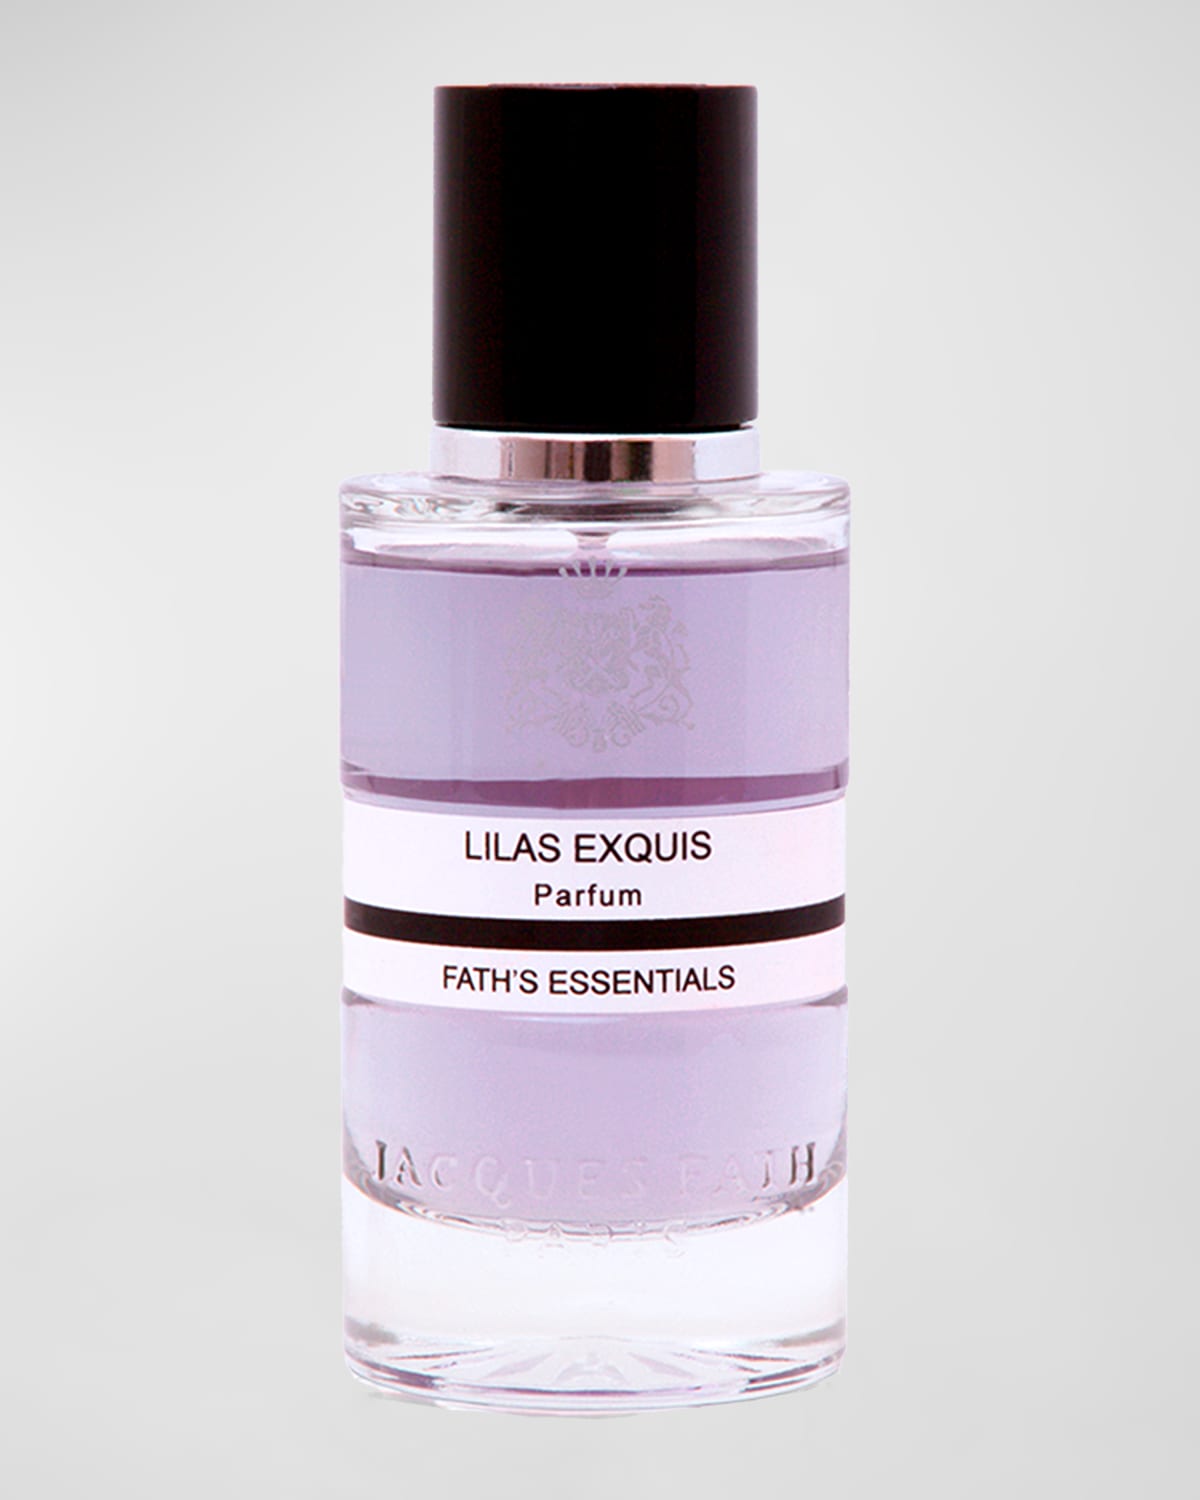 Shop Jacques Fath 3.4 Oz. Lilas Exquis Natural Parfum Spray